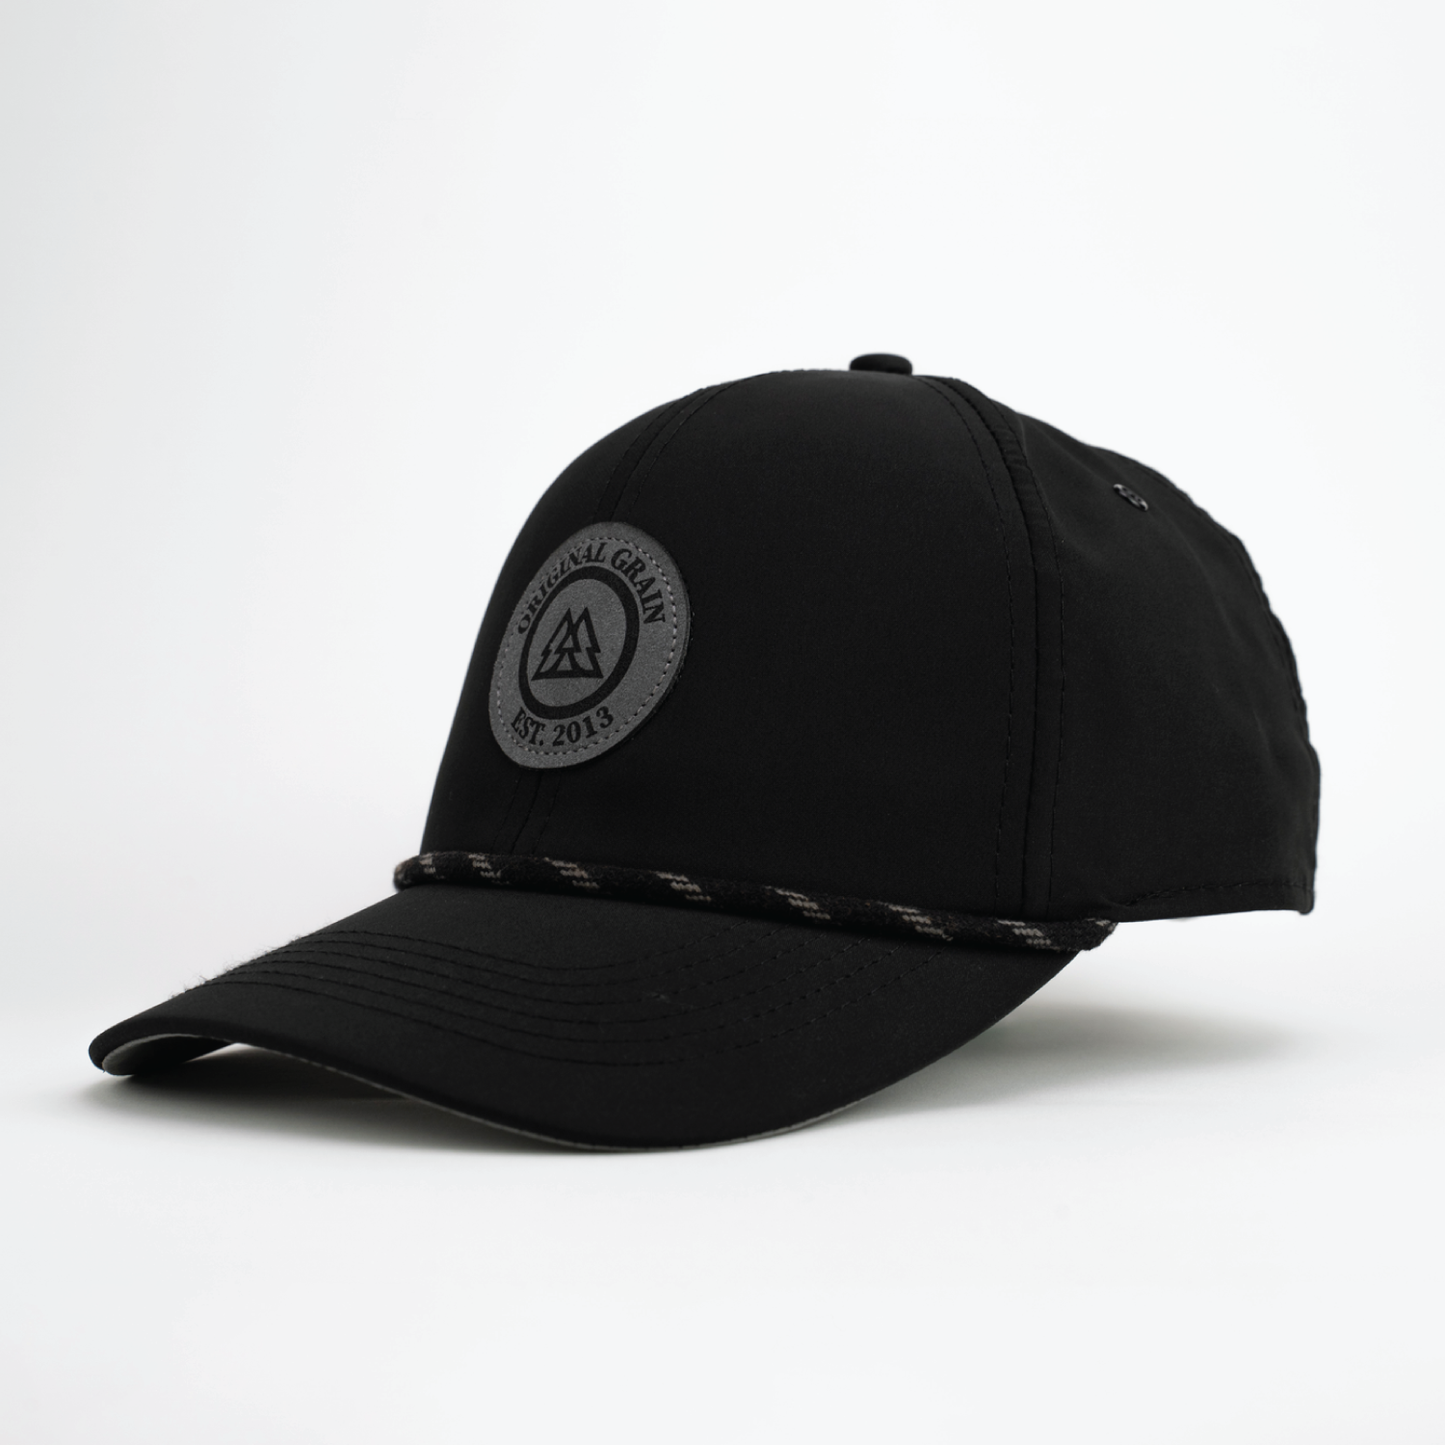 Hut aus schwarzem und anthrazitfarbenem Wildleder mit Originalnarbung